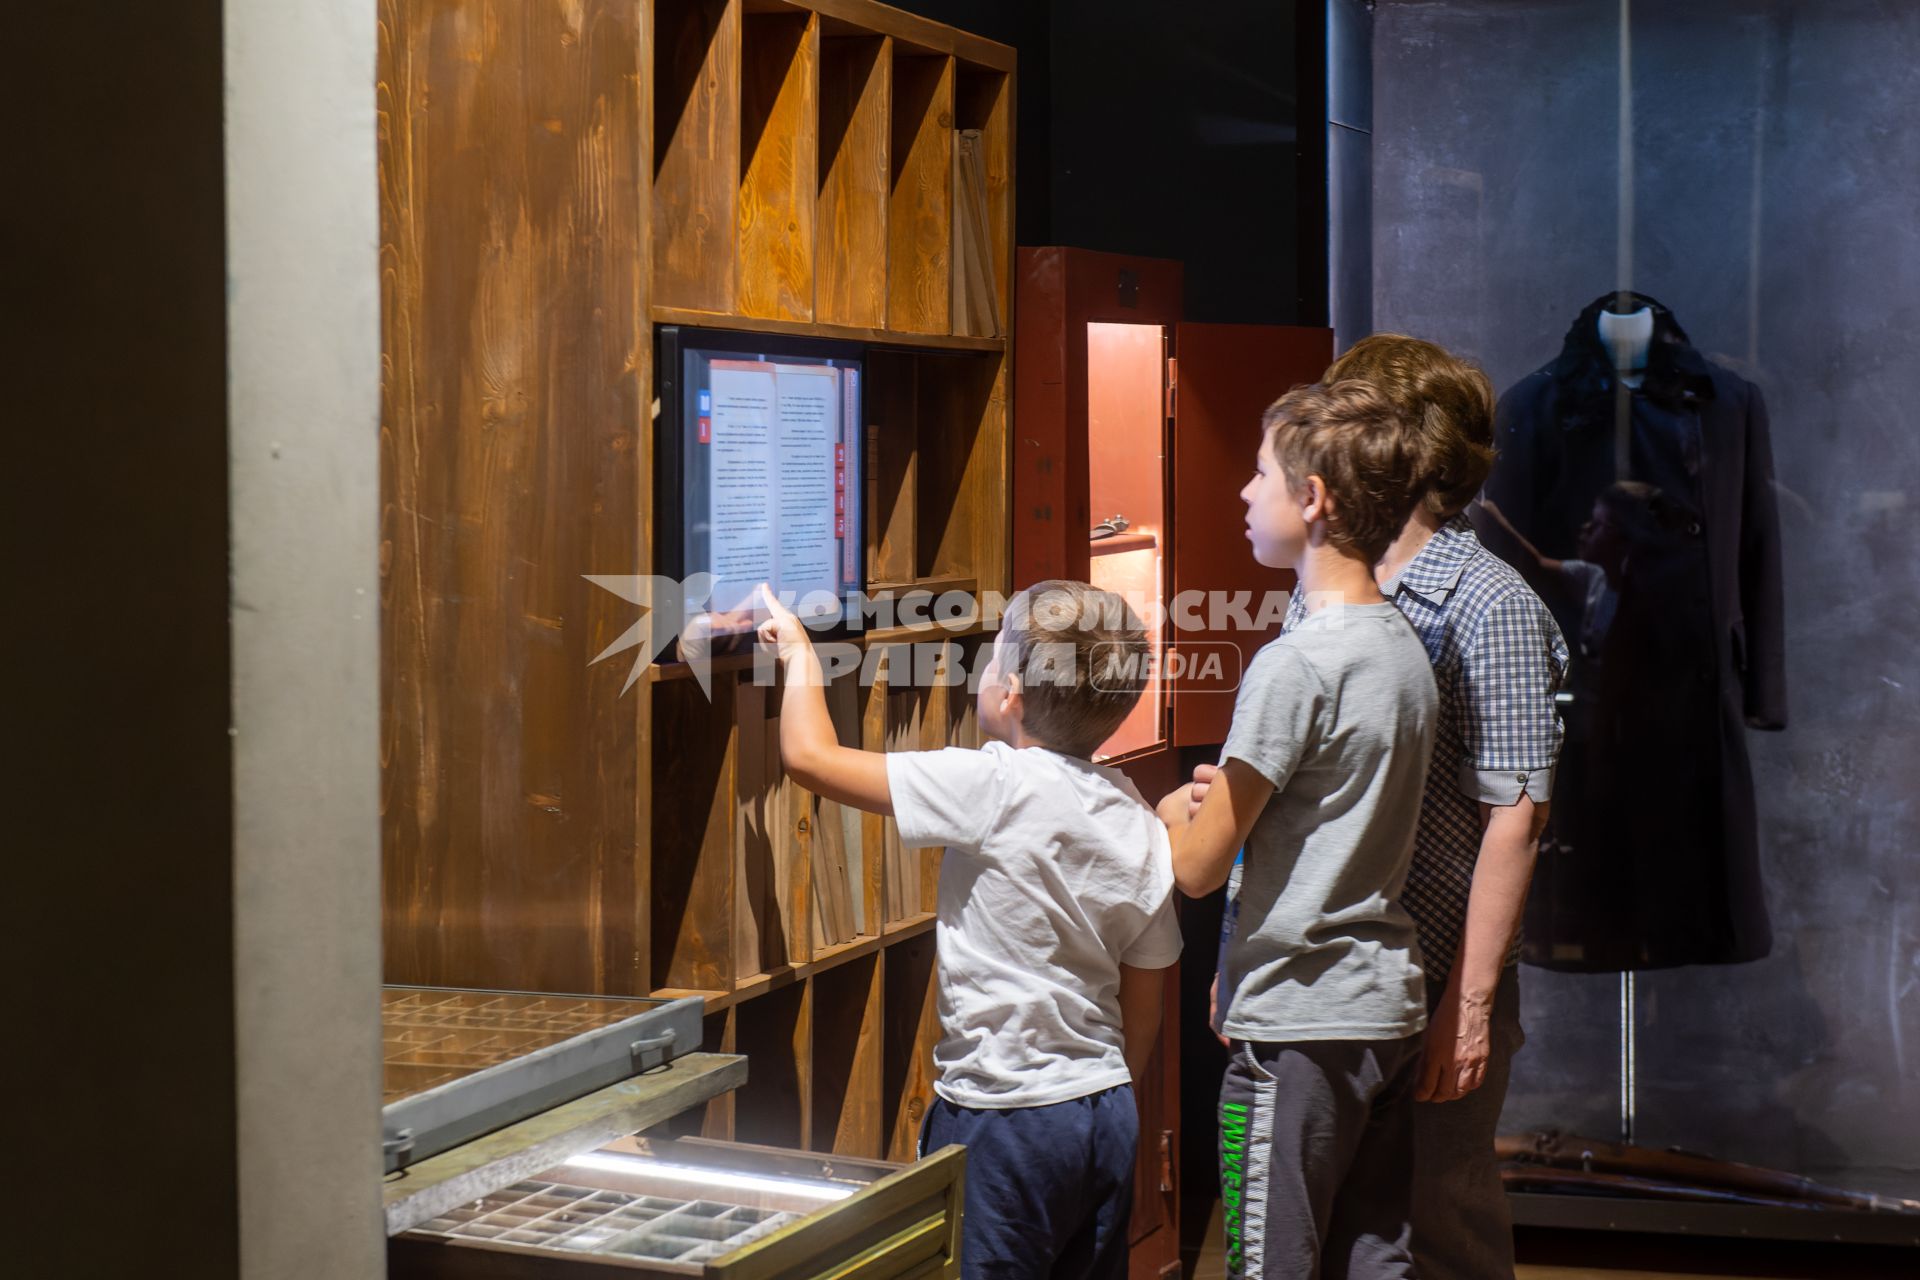 Тула. Посетители осматривают интерактивную экспозицию в музее обороны Тулы.